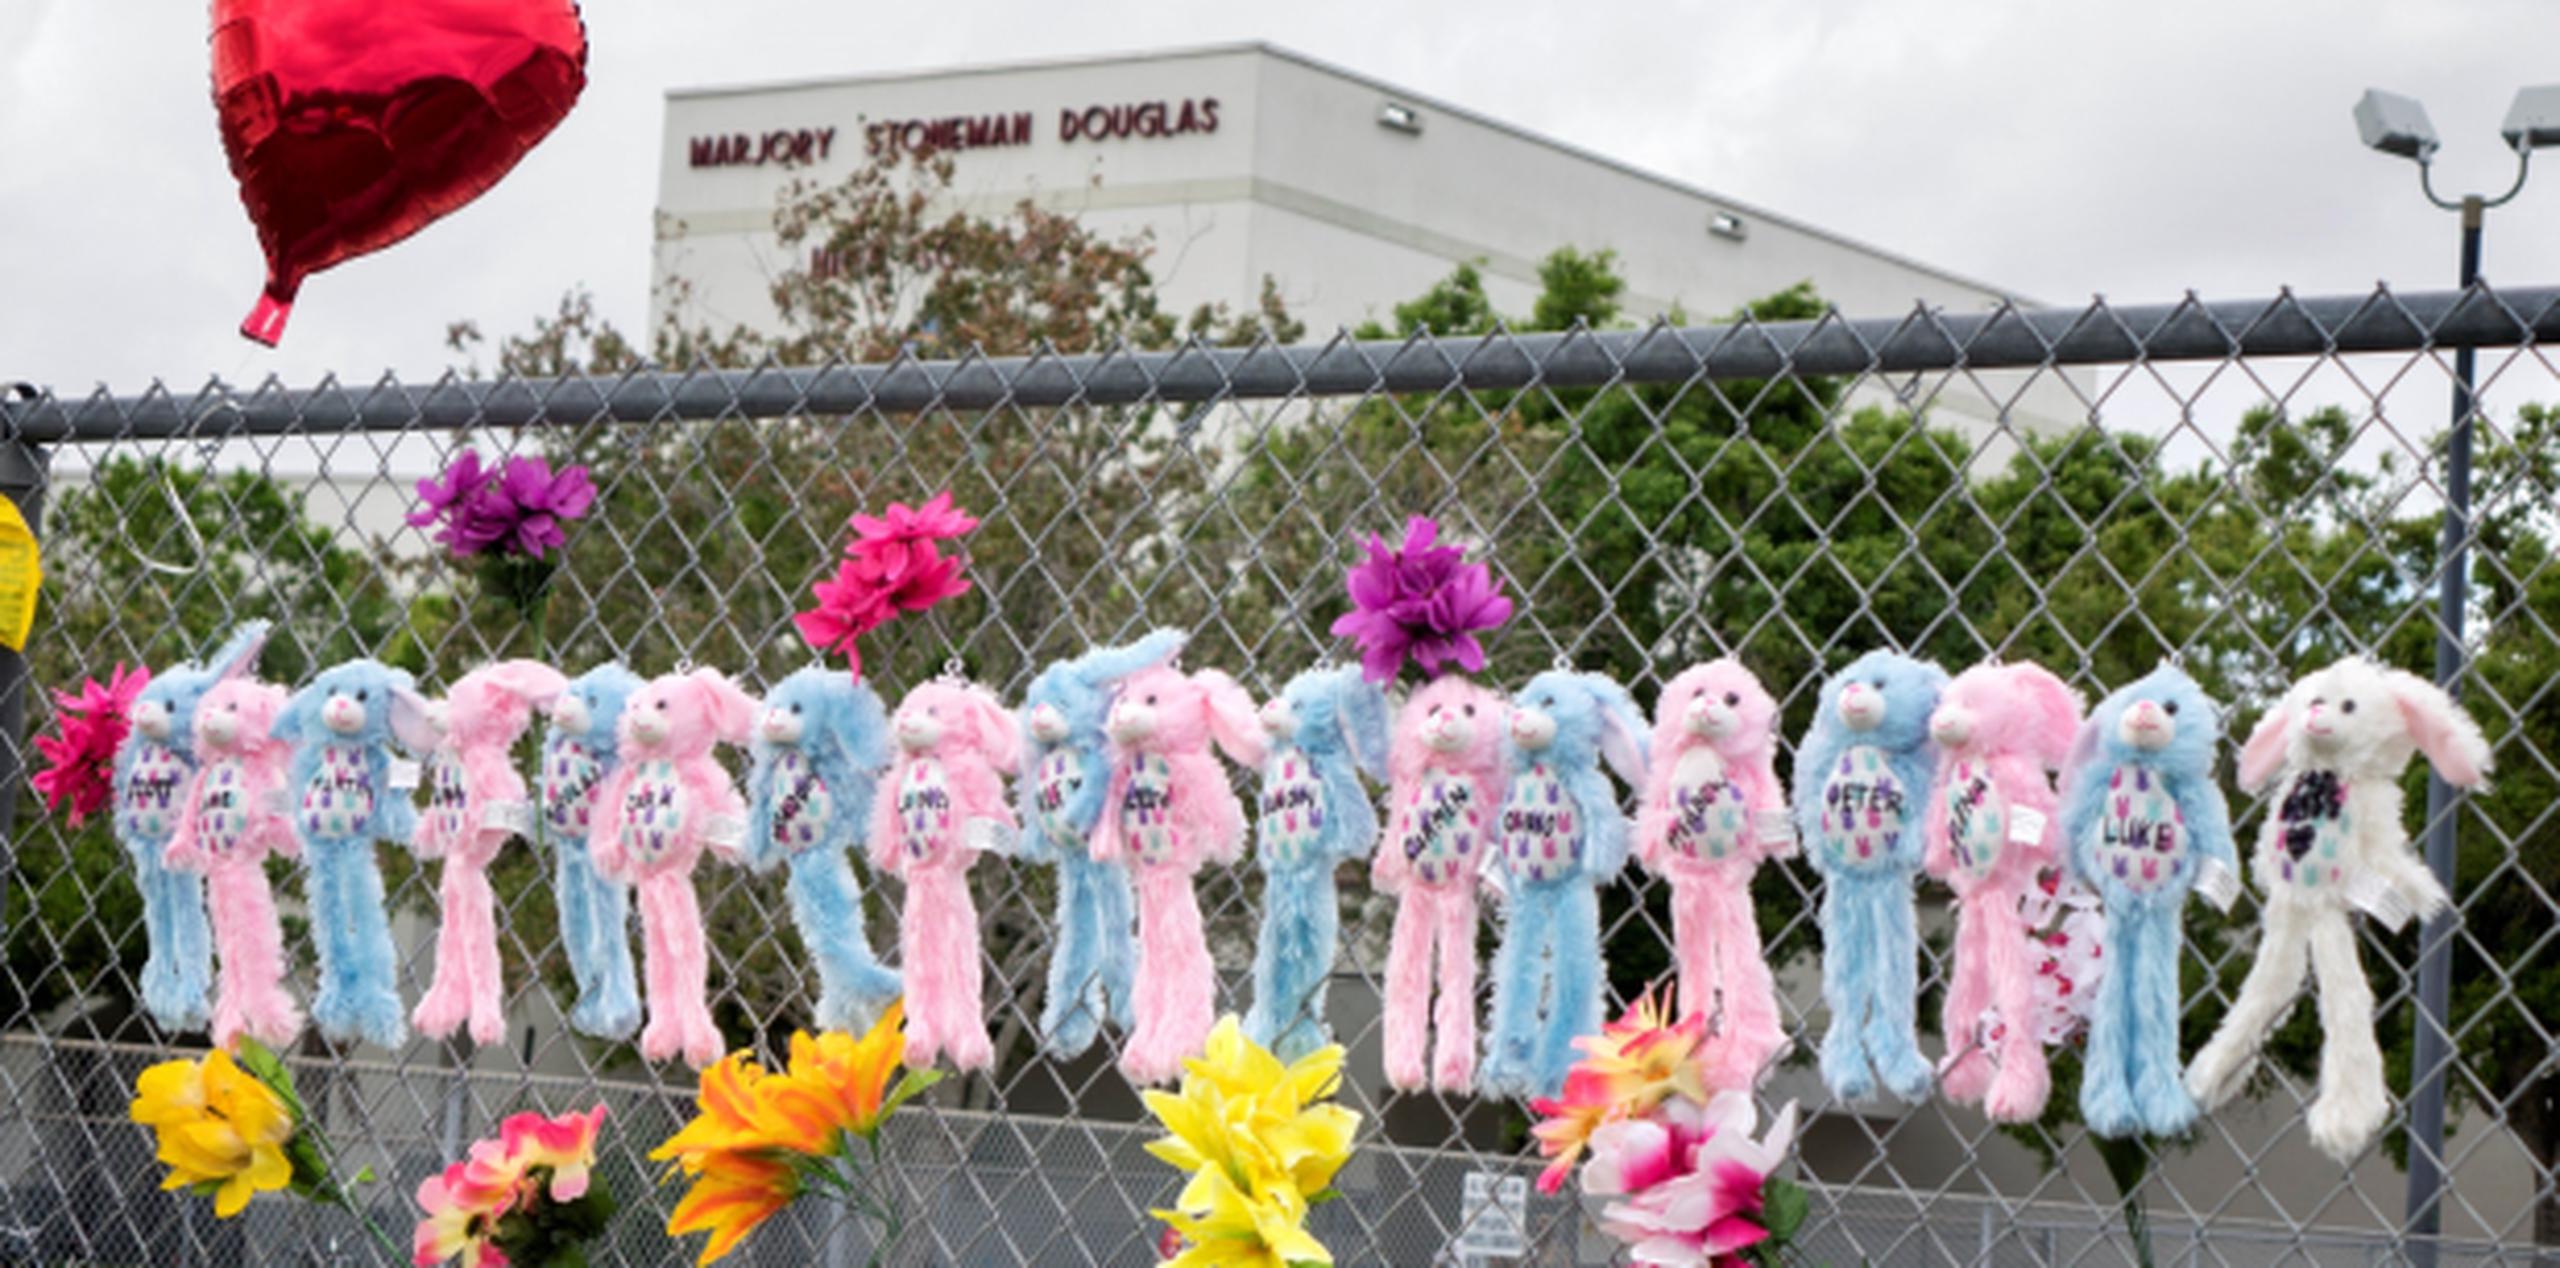 La matanza en la escuela Marjory Stoneman Douglas murieron 17 personas. (EFE / Cristobal Herrera)